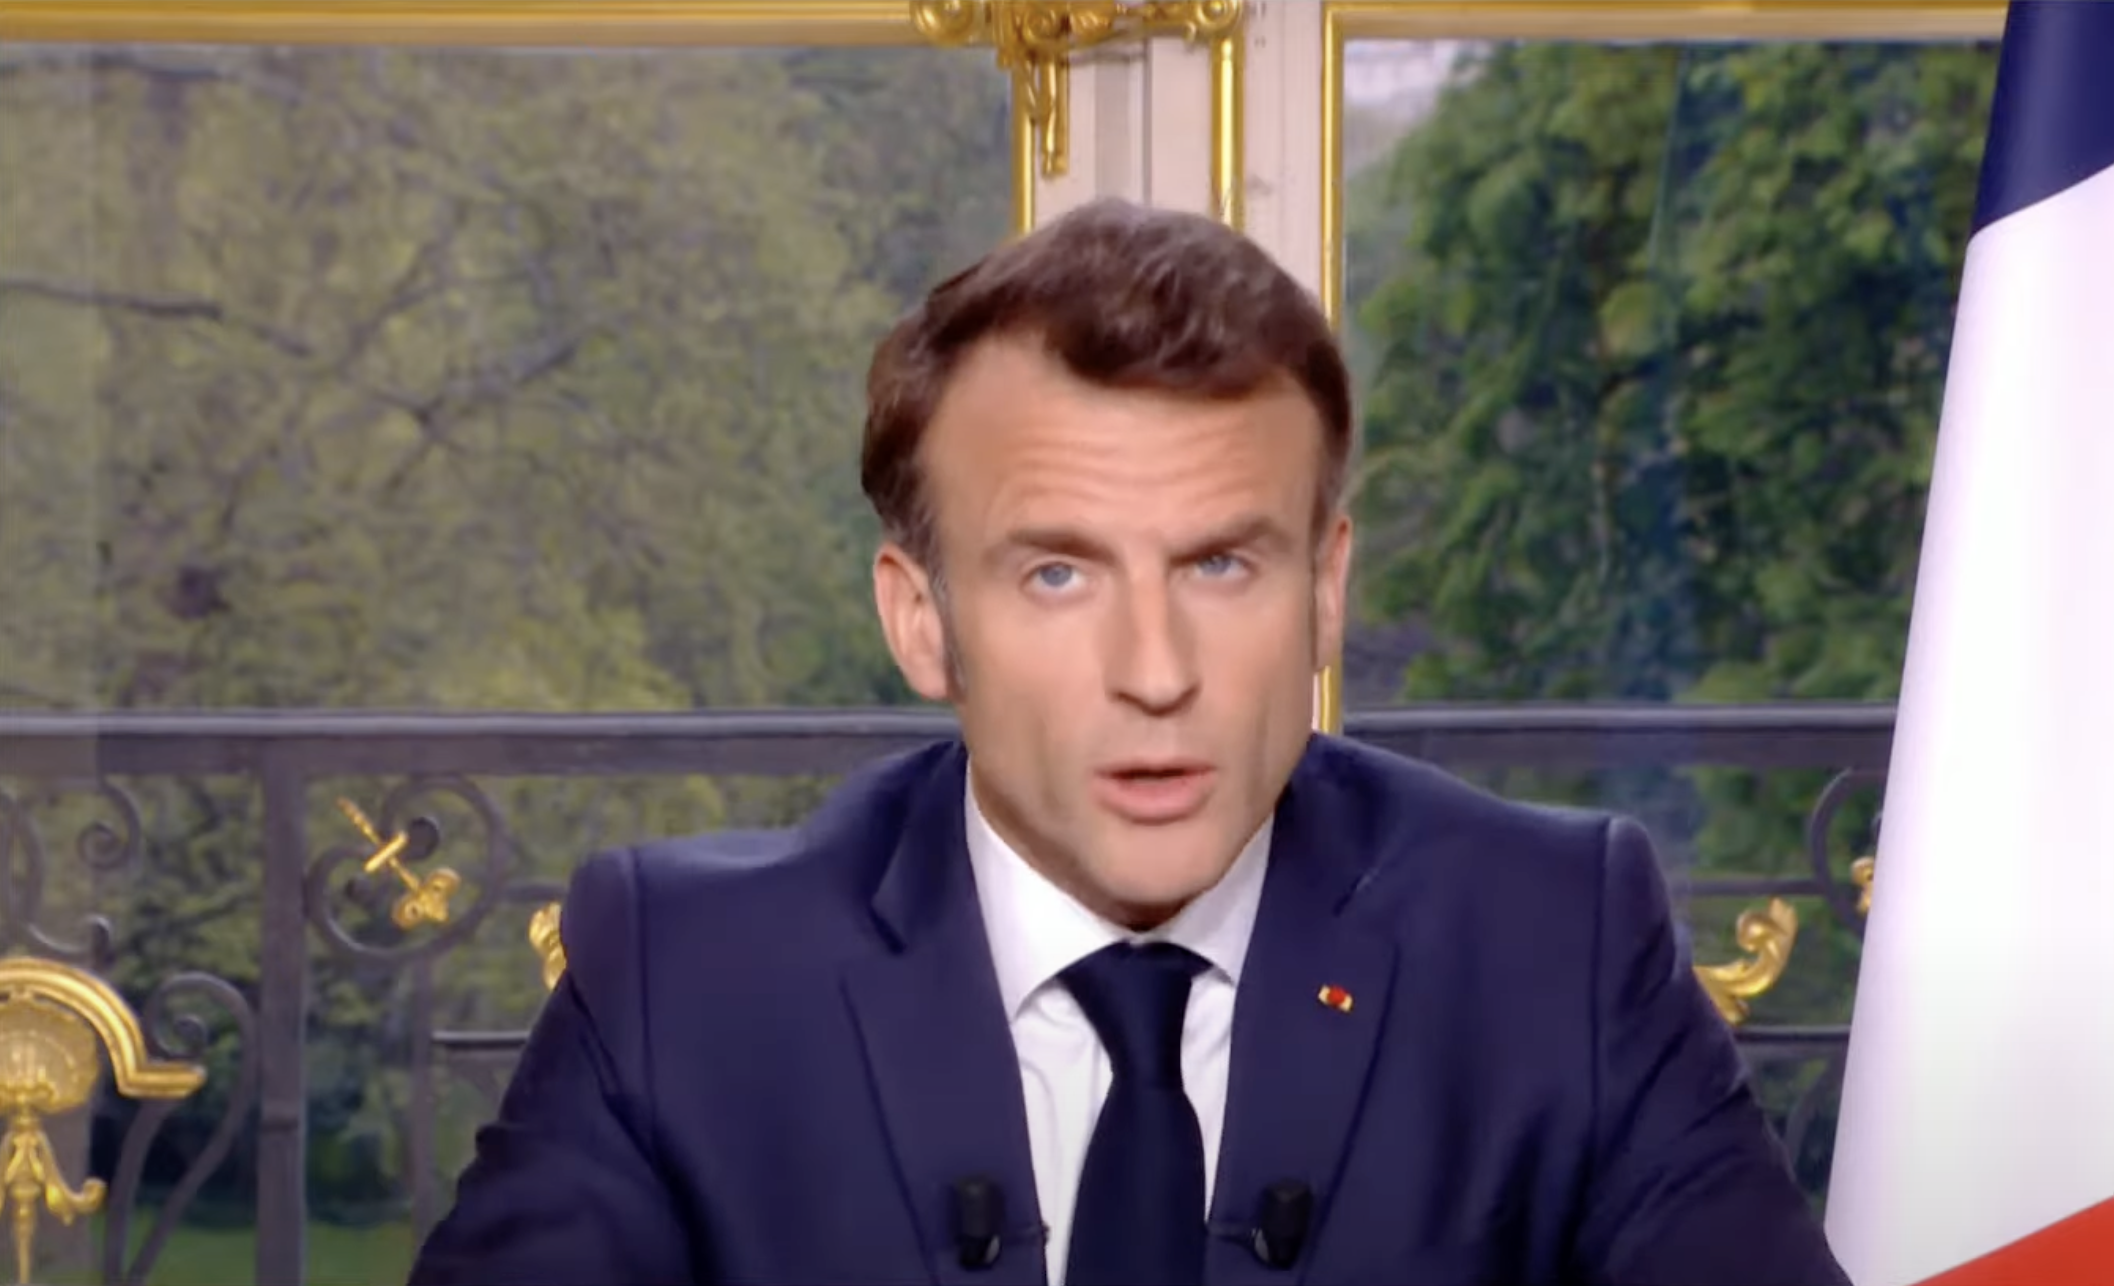     « Entre 100 et 230 € nets en plus par mois » pour les enseignants, annonce Emmanuel Macron

